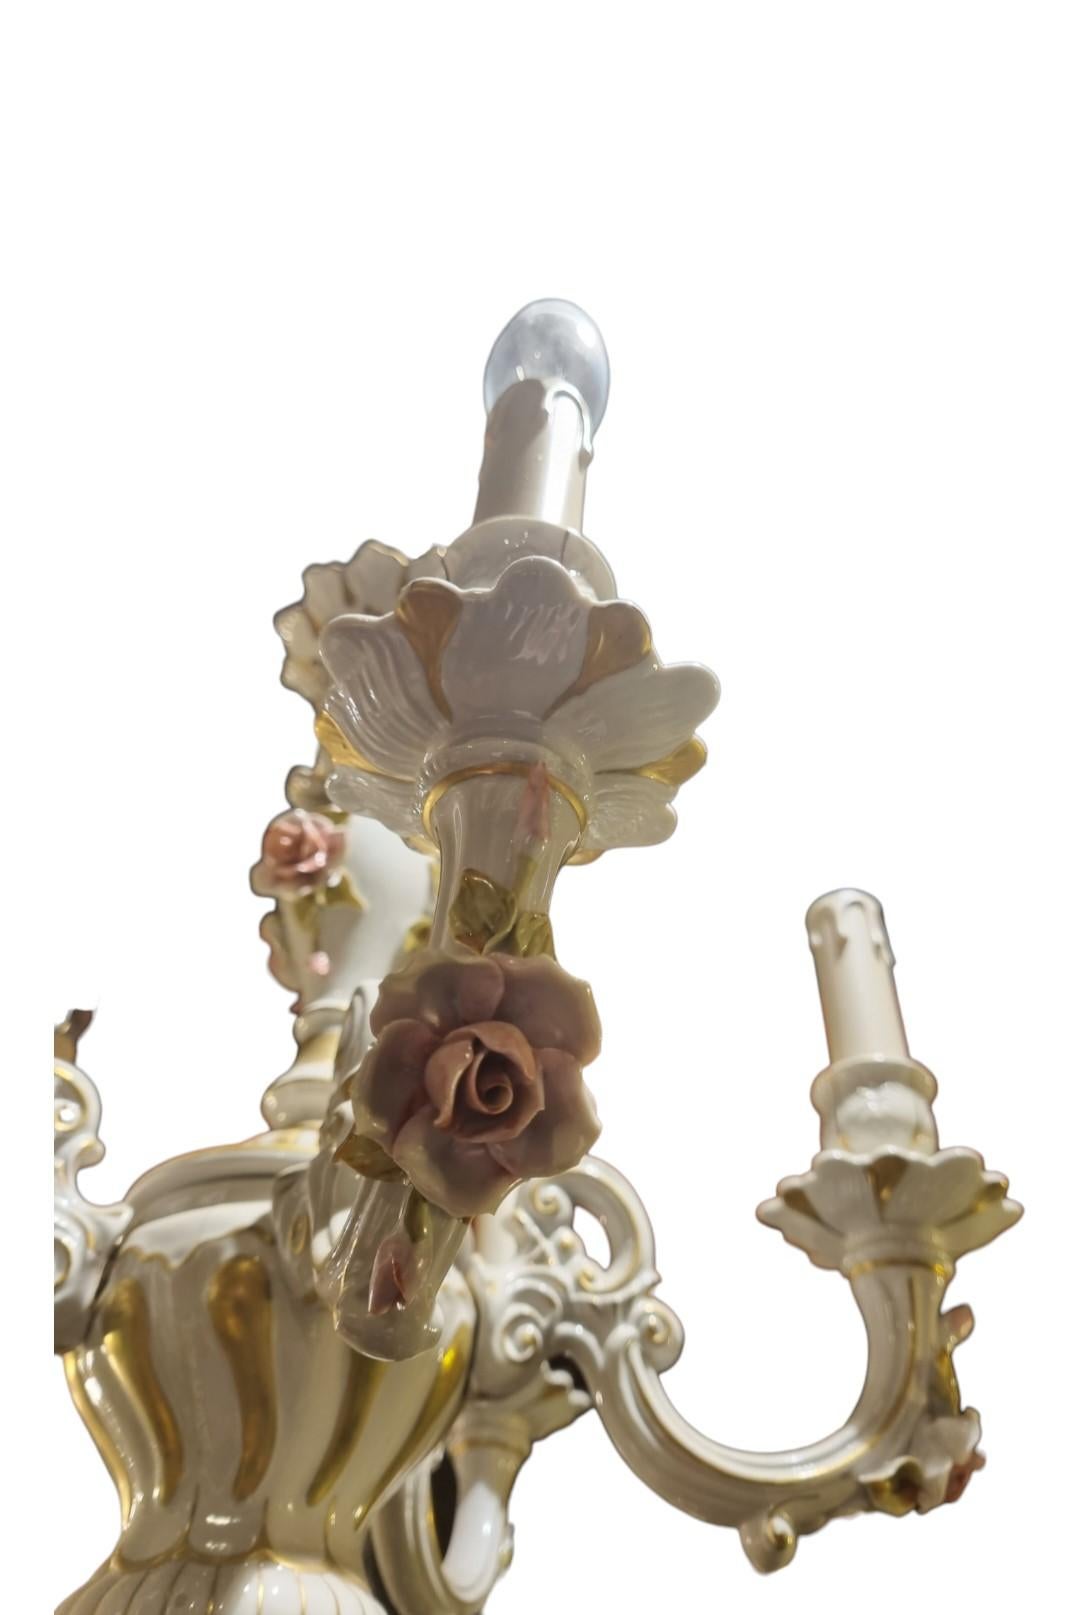 Un joli lustre Capo Di Monte à cinq branches
Jolie décoration avec des fleurs en porcelaine et des décorations dorées,
Ce lustre date des années 1950 et a été recâblé et prêt à être suspendu.